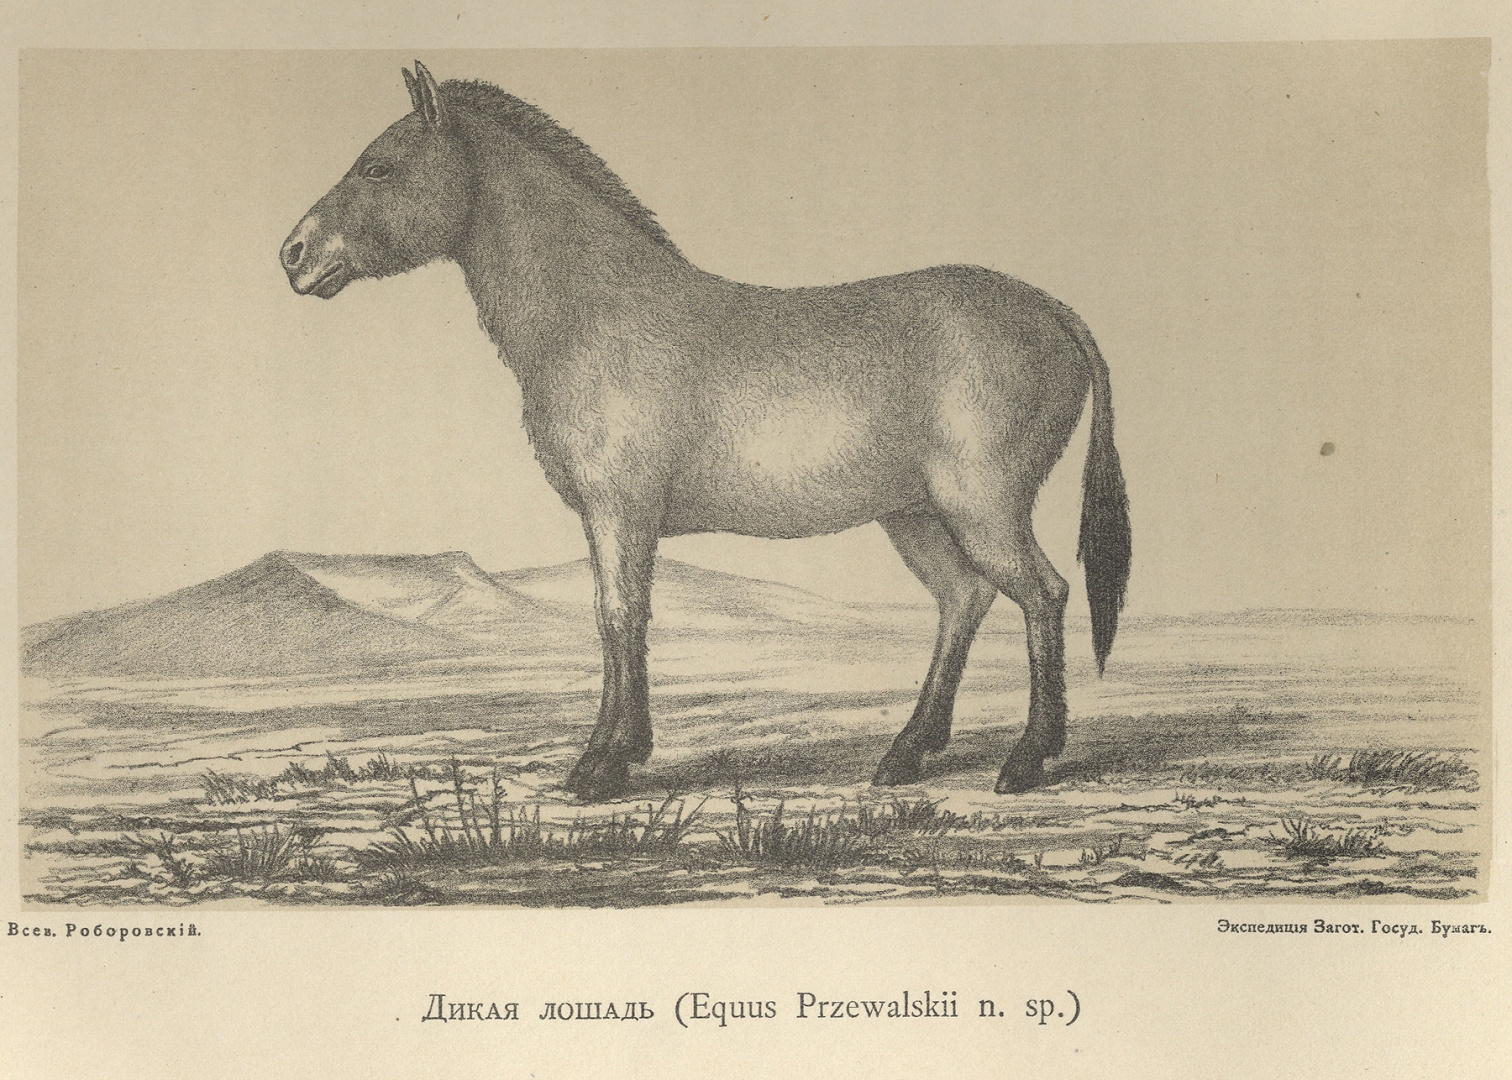 Архивный рисунок дикой лошади из экспедиции Пржевальского